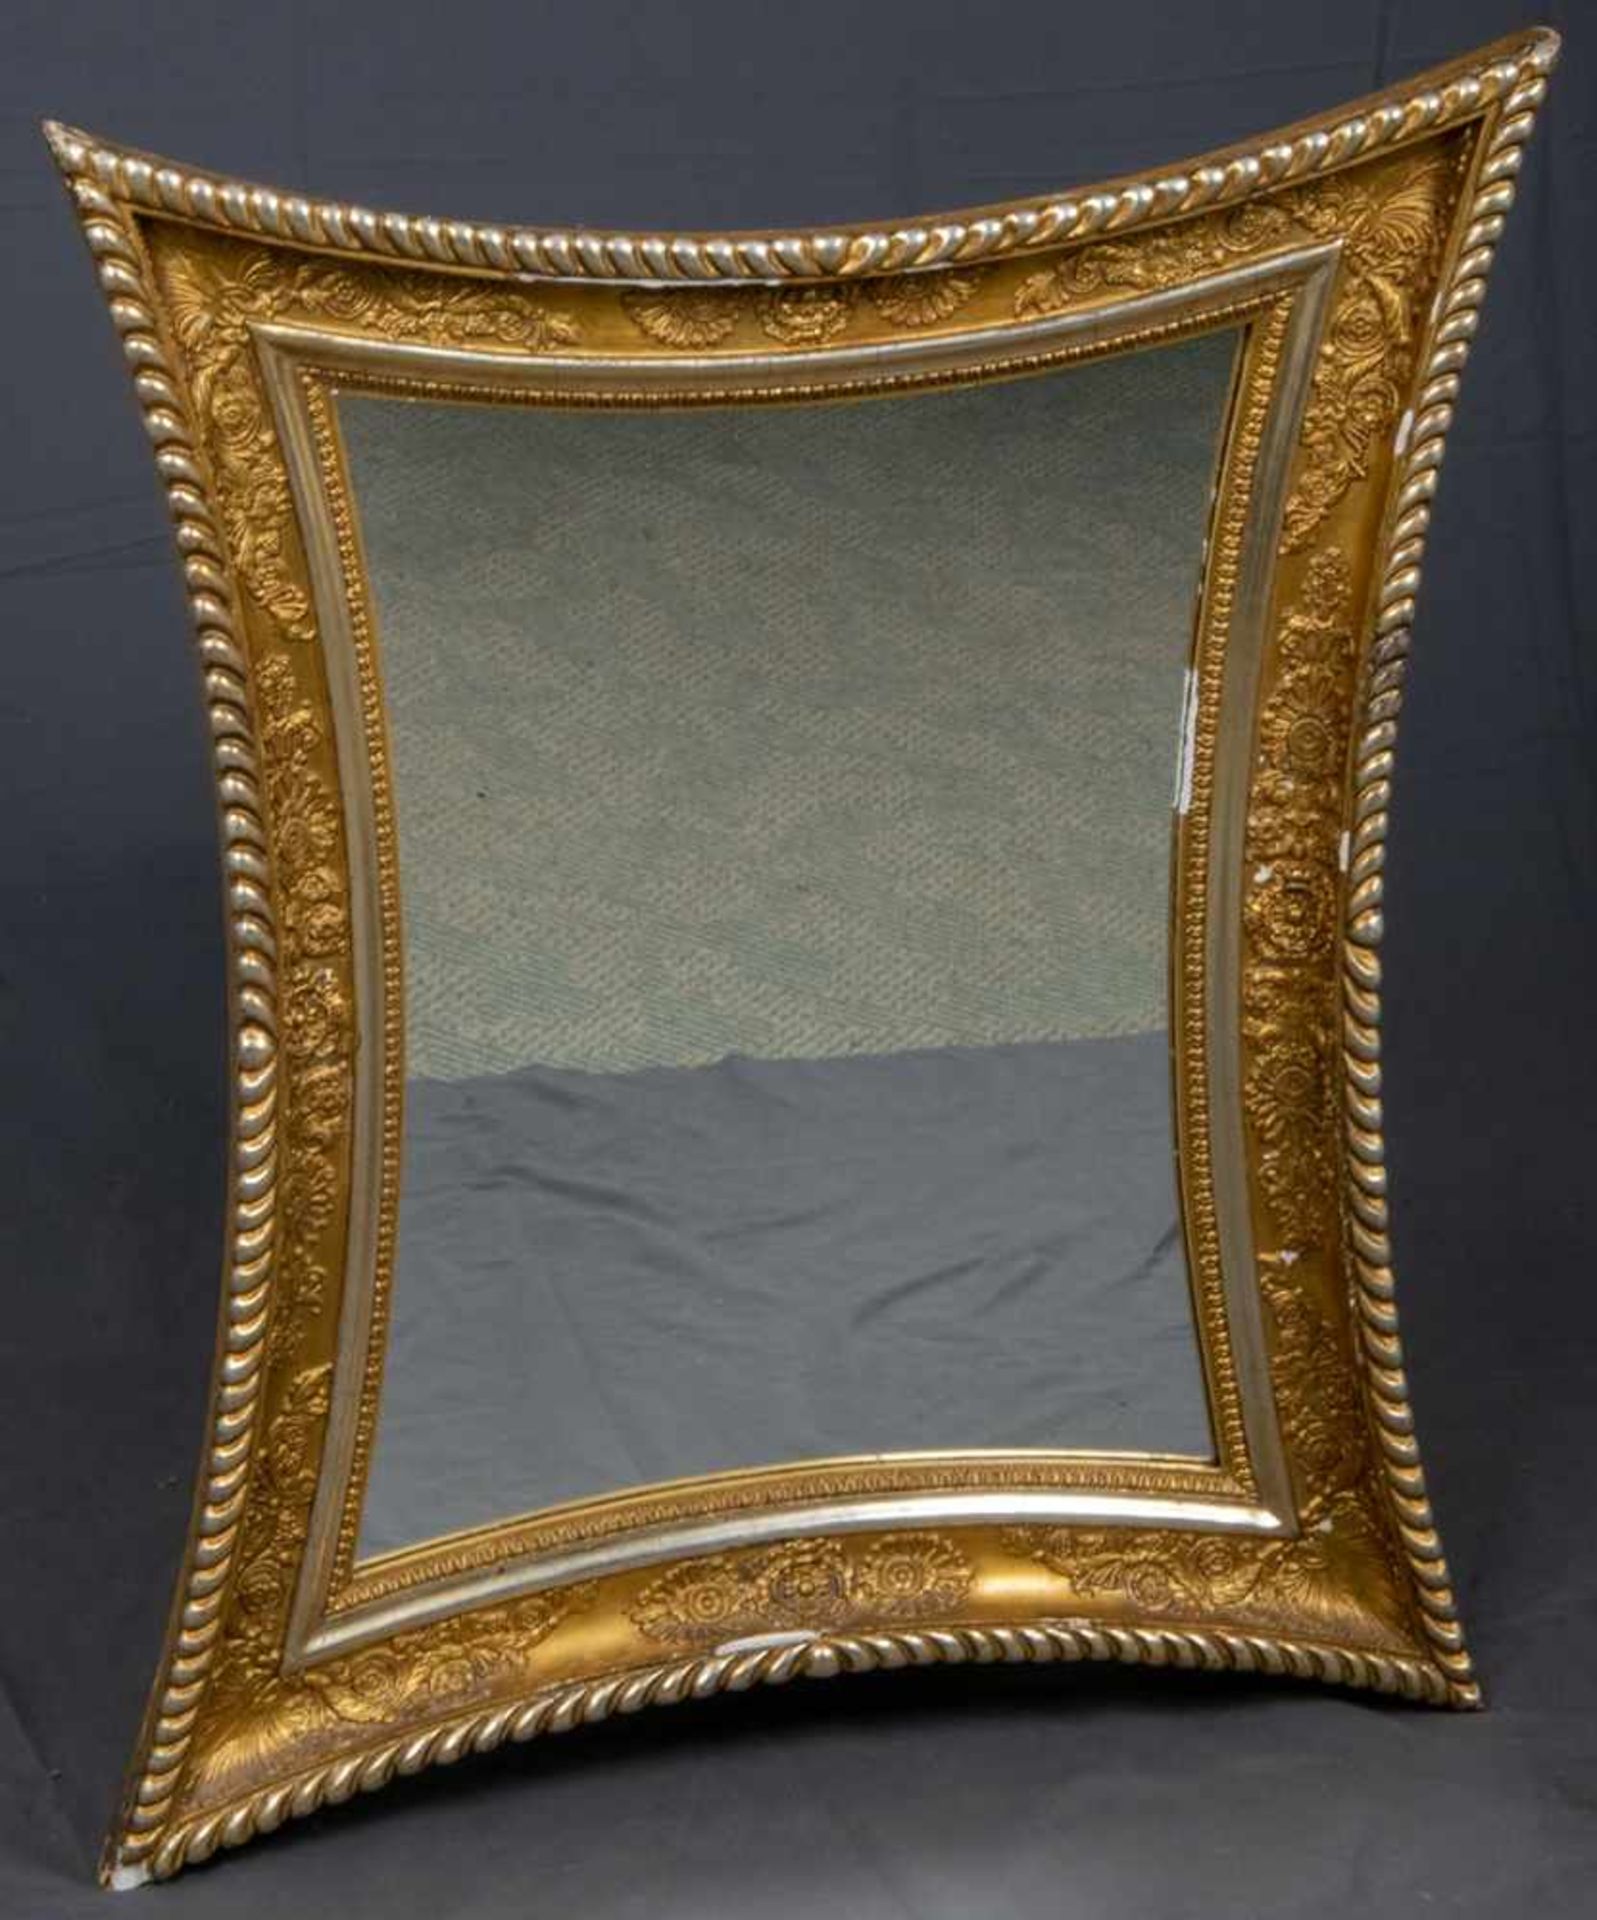 Äußerst eleganter Empirespiegel um 1800/20. Allseitig konkav geschwungener Rahmen mit - Bild 2 aus 7